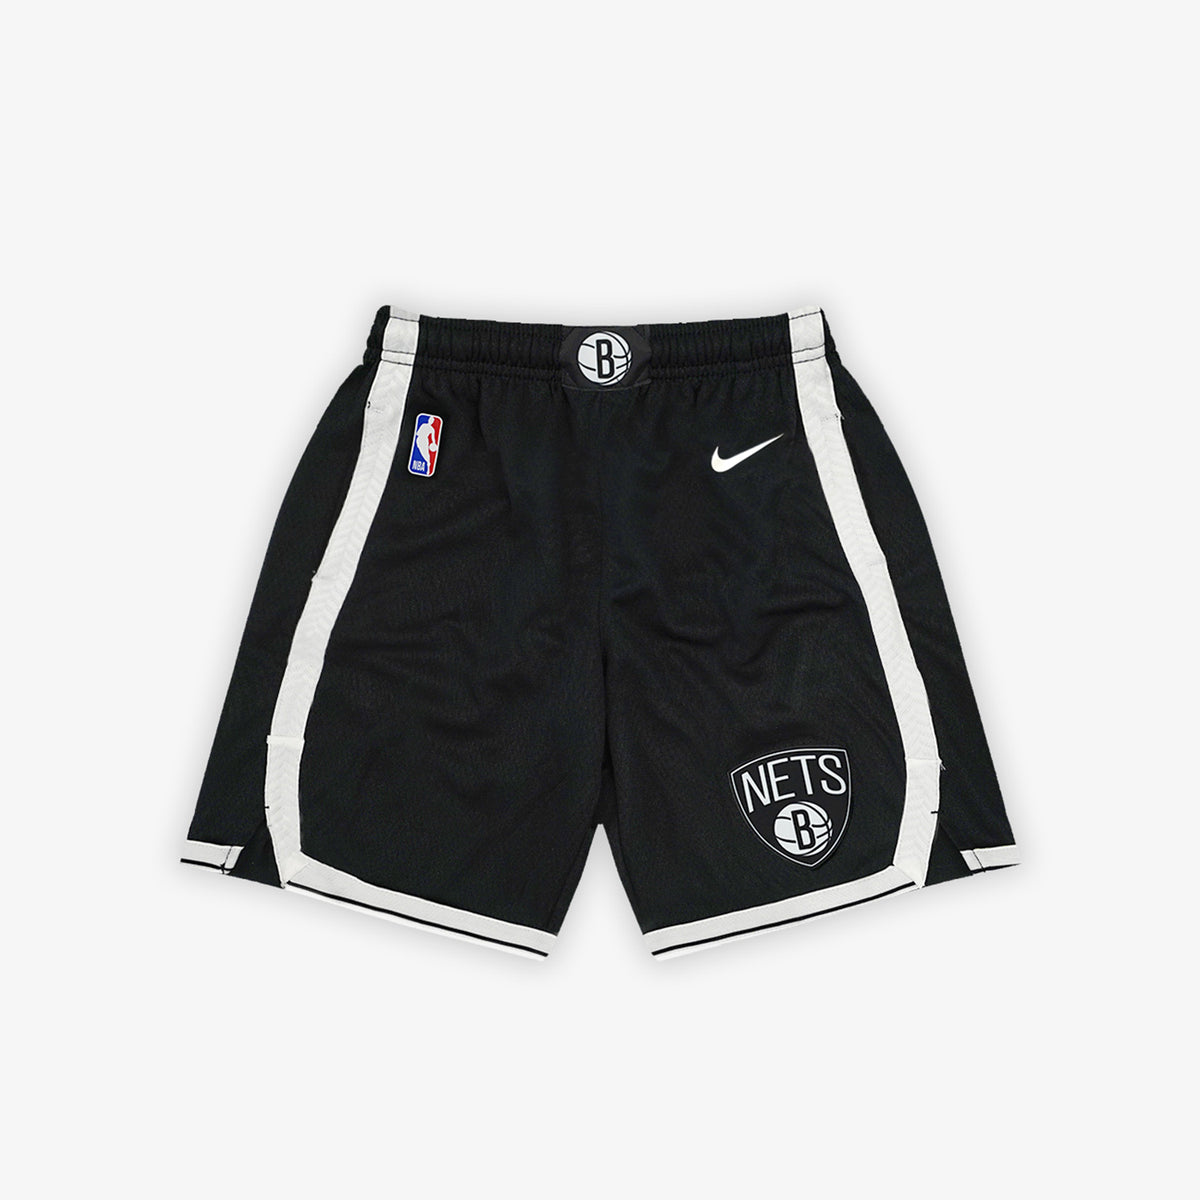 Nike NBA Brooklyn Nets Icon Edition Swingman Shorts Mens Sz Small AJ5584-010